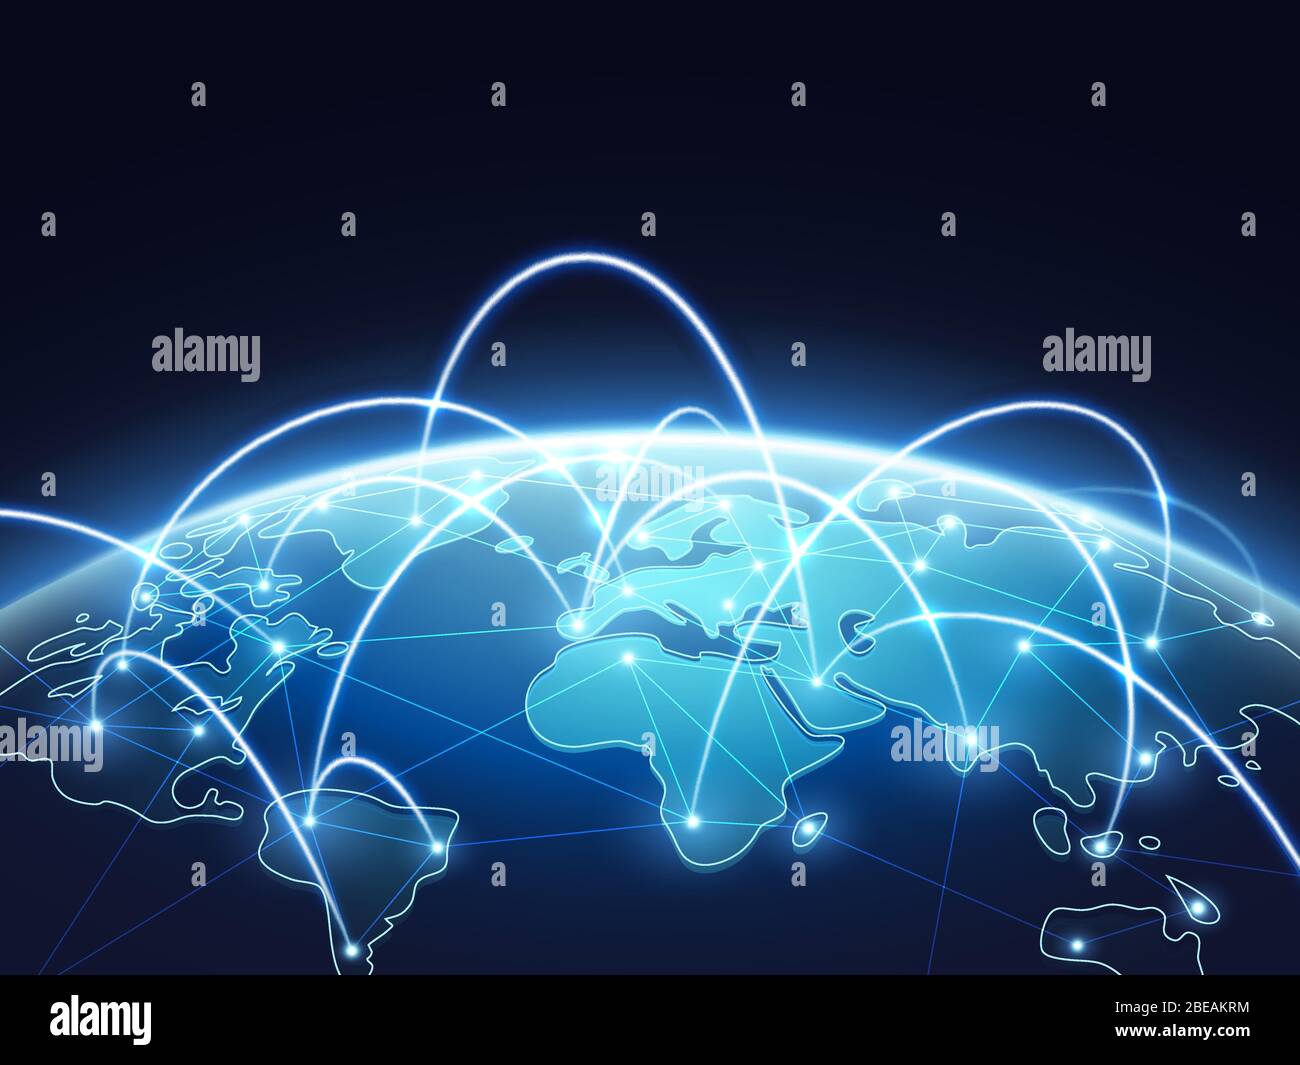 Concept vectoriel de réseau abstrait avec le monde entier. Internet et contexte de connexion globale. Illustration de la connexion numérique de la terre mondiale abstraite bleue Illustration de Vecteur